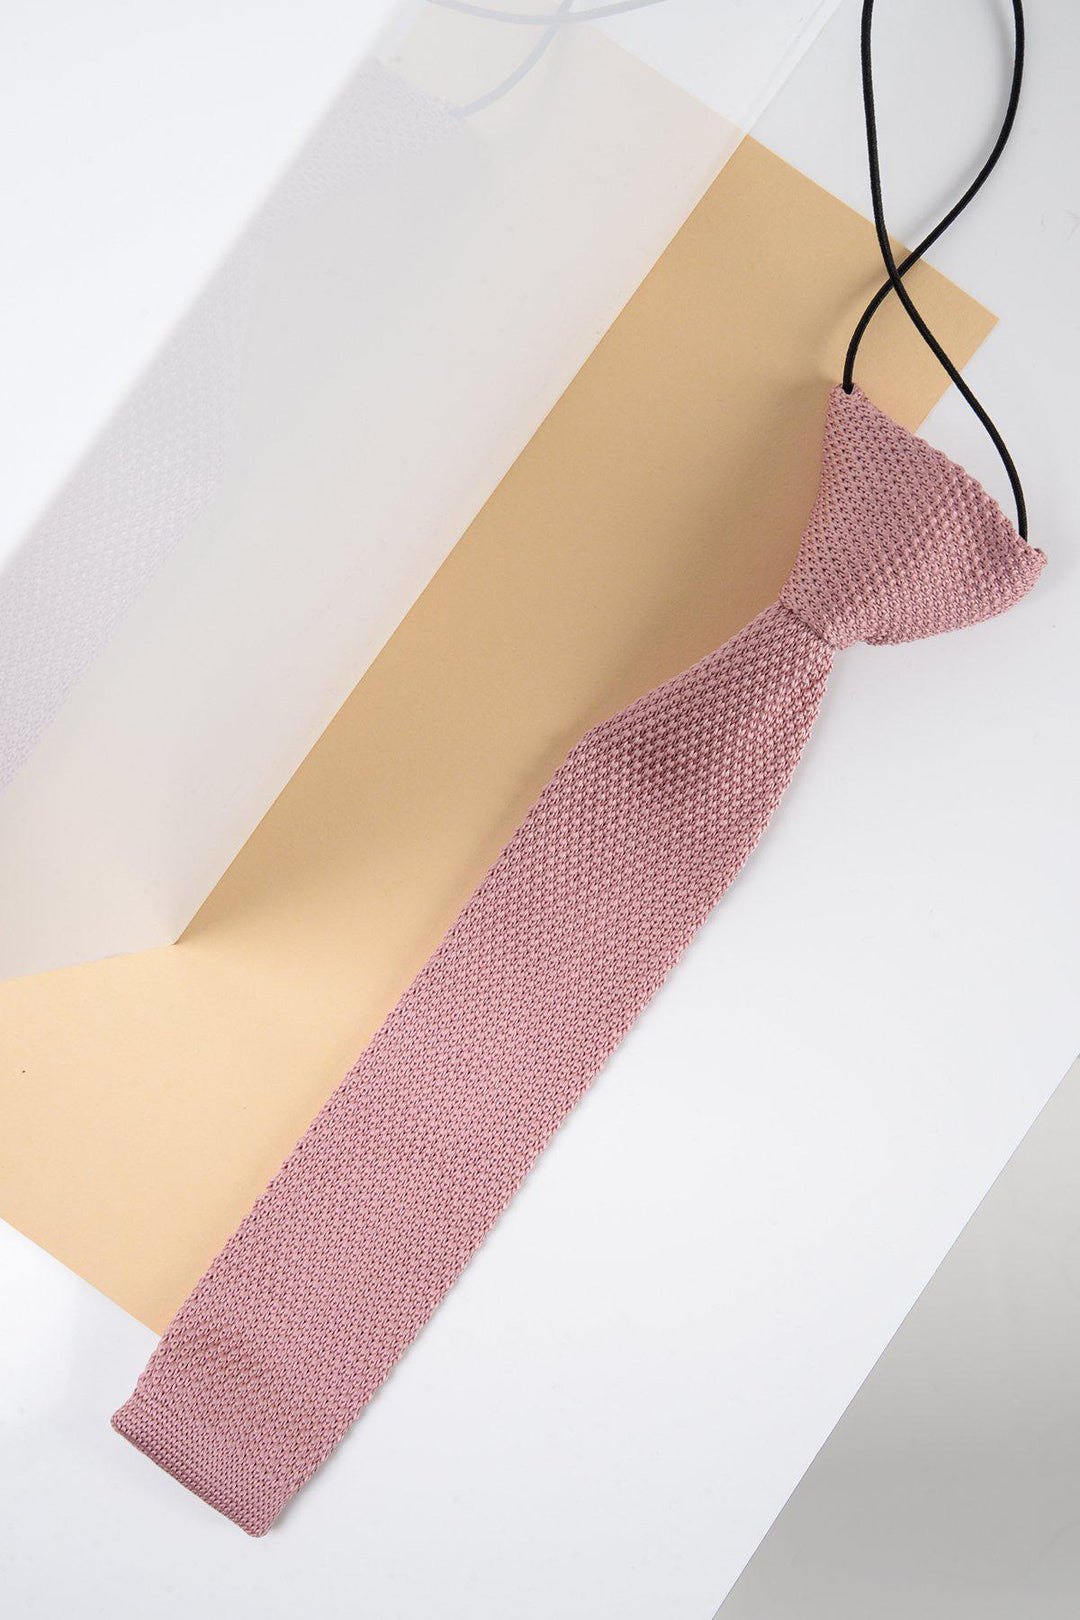 Children's Knitted Tie In Blush Pink